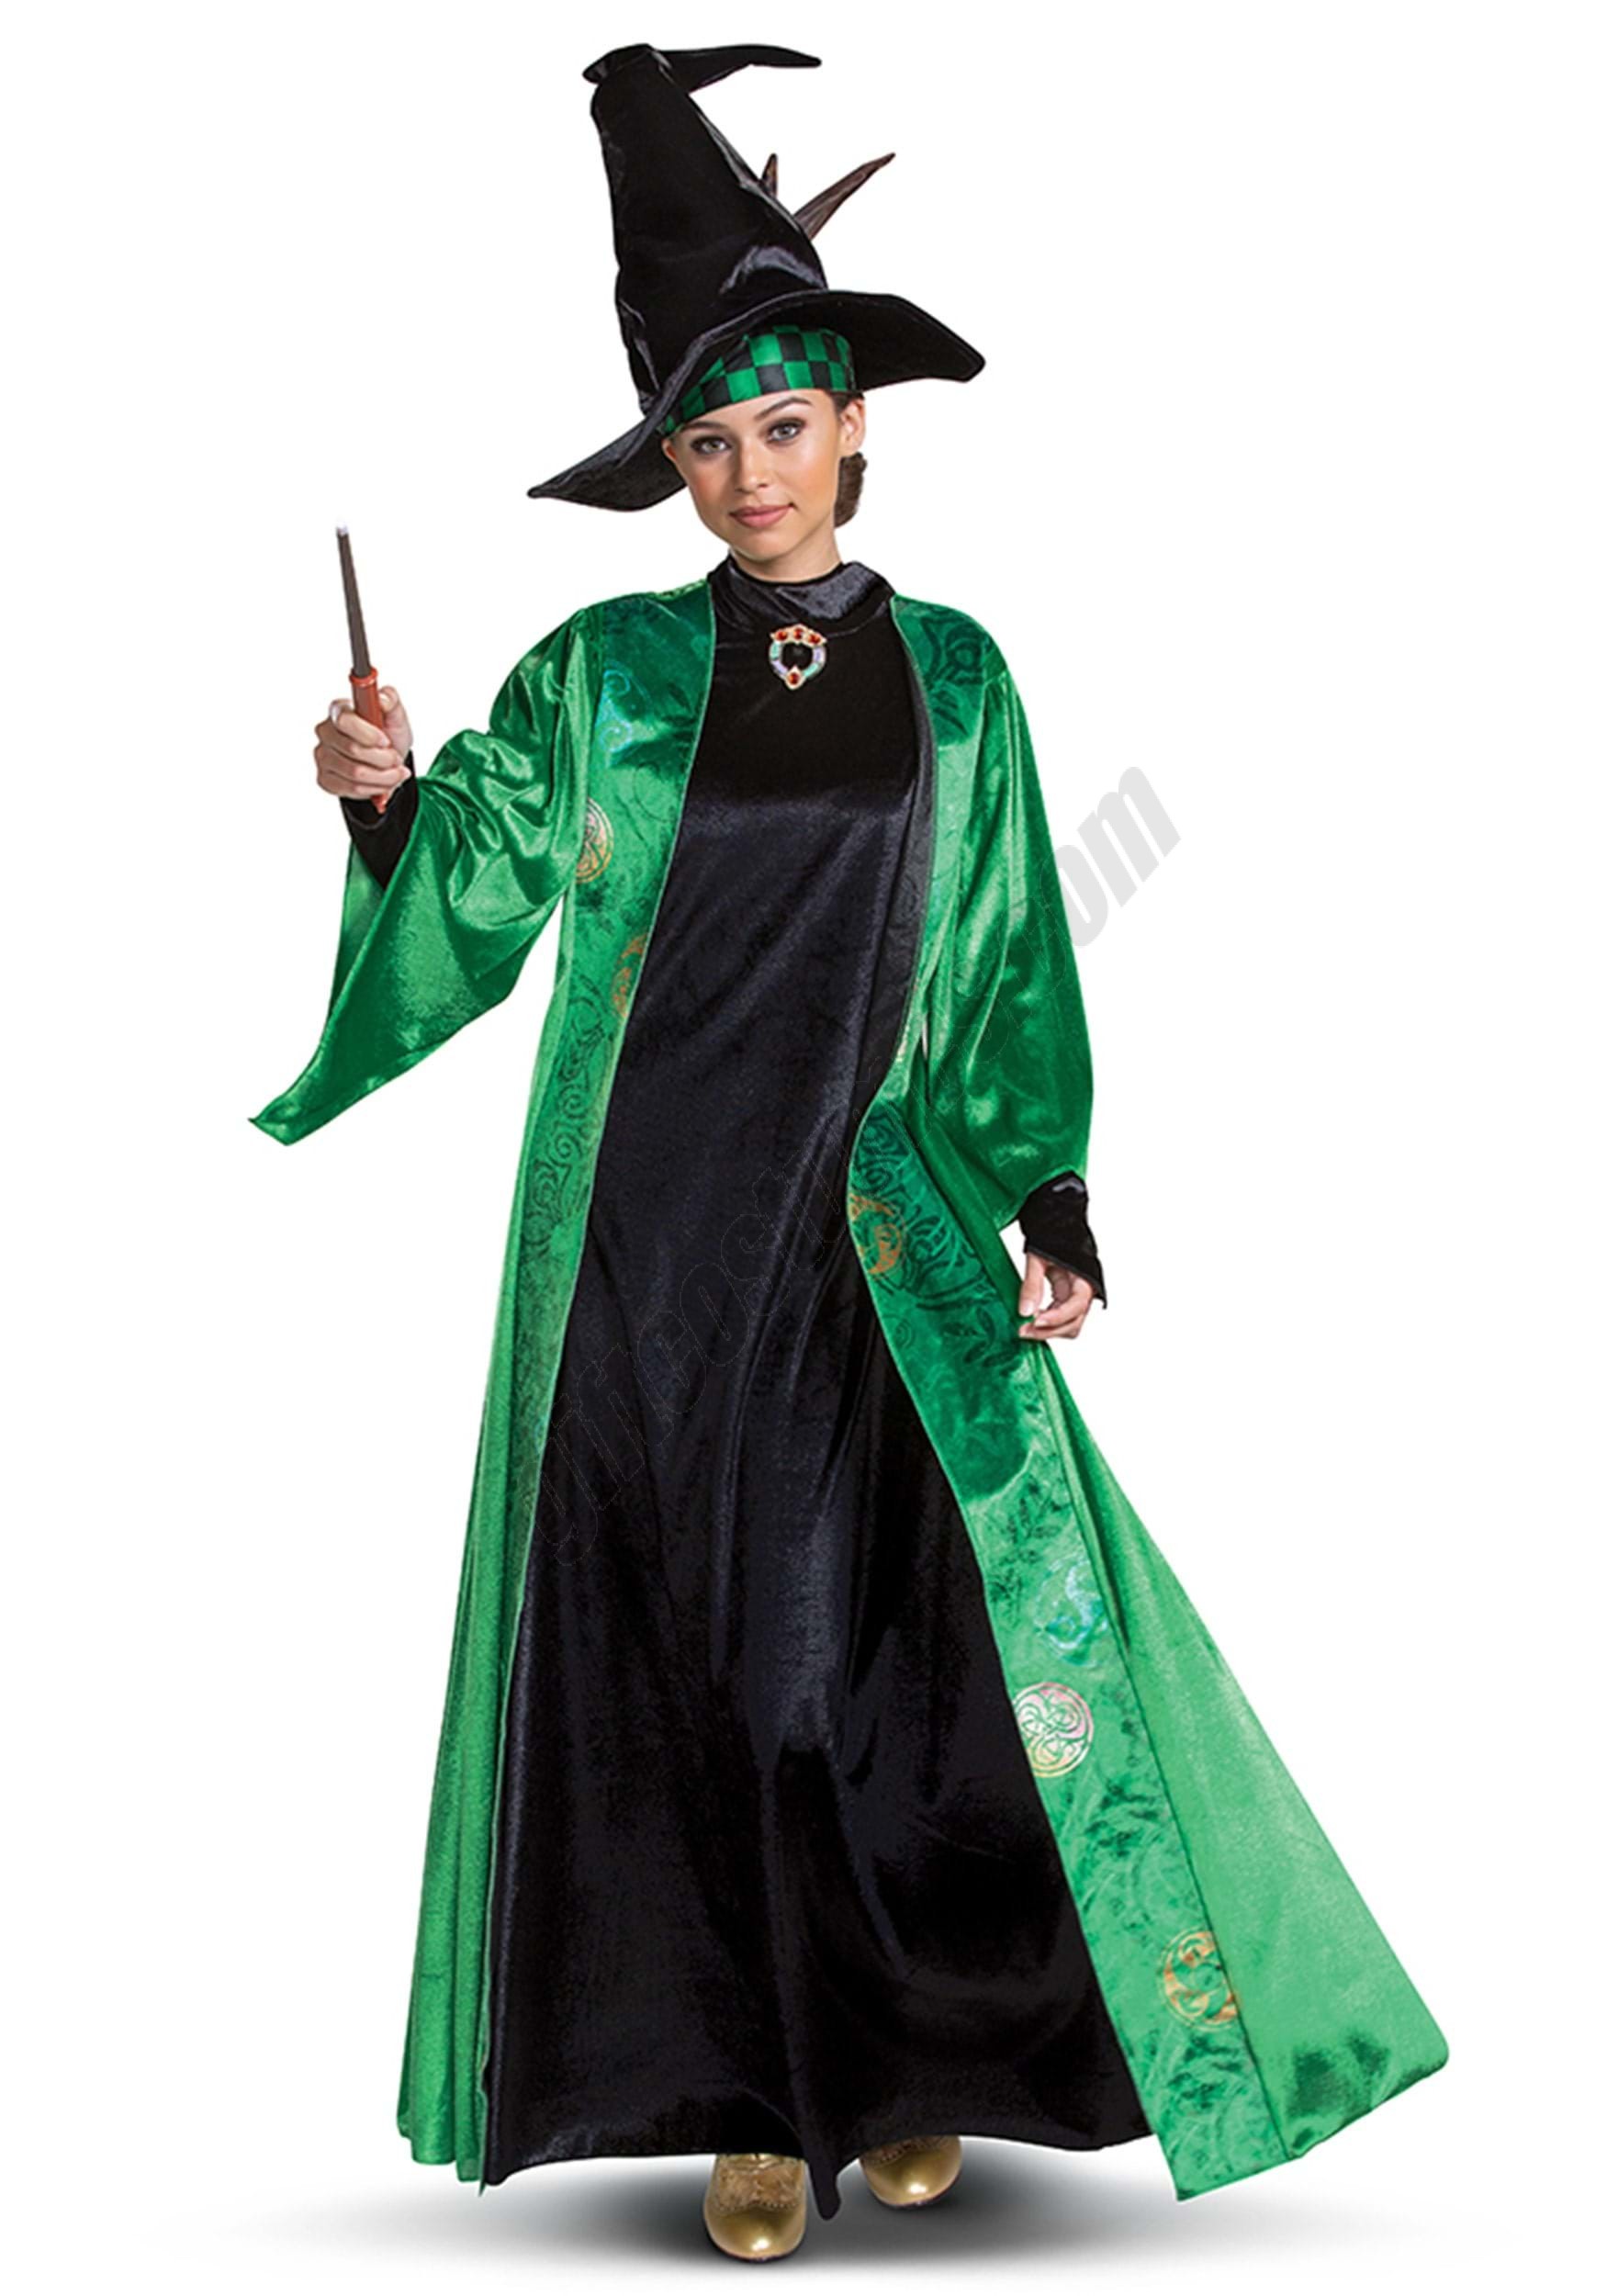 Harry Potter Adult Deluxe Professor McGonagall Costume Promotions - Harry Potter Adult Deluxe Professor McGonagall Costume Promotions